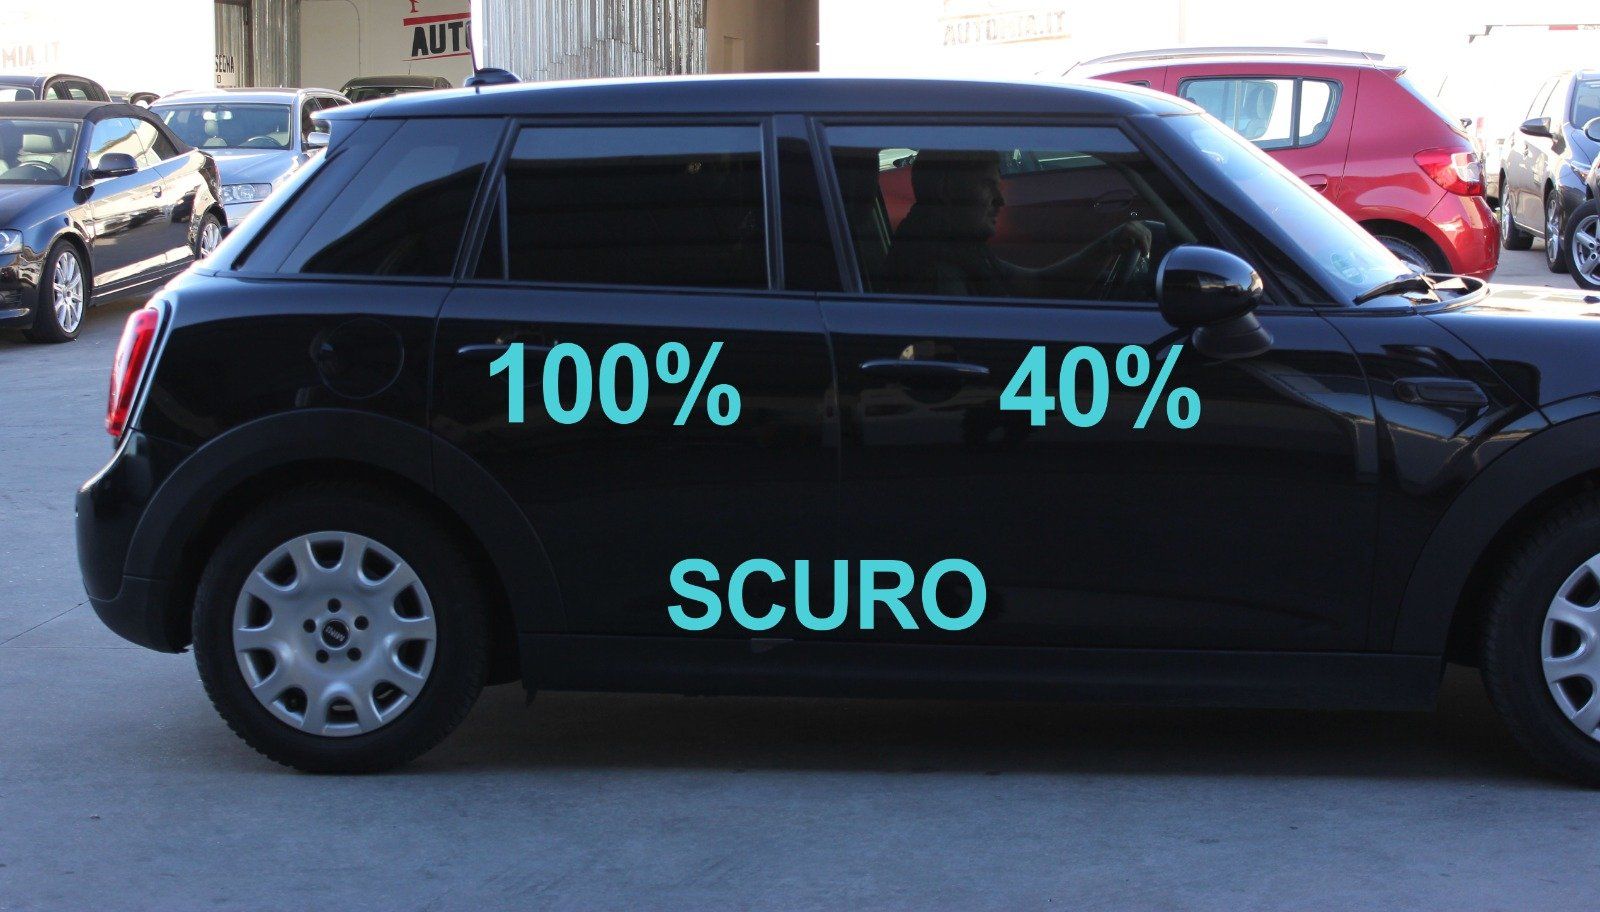 Gradazione  tonalità oscuramento vetri auto con pellicole oscuranti al 100% scuro  Mini cooper 5 porte